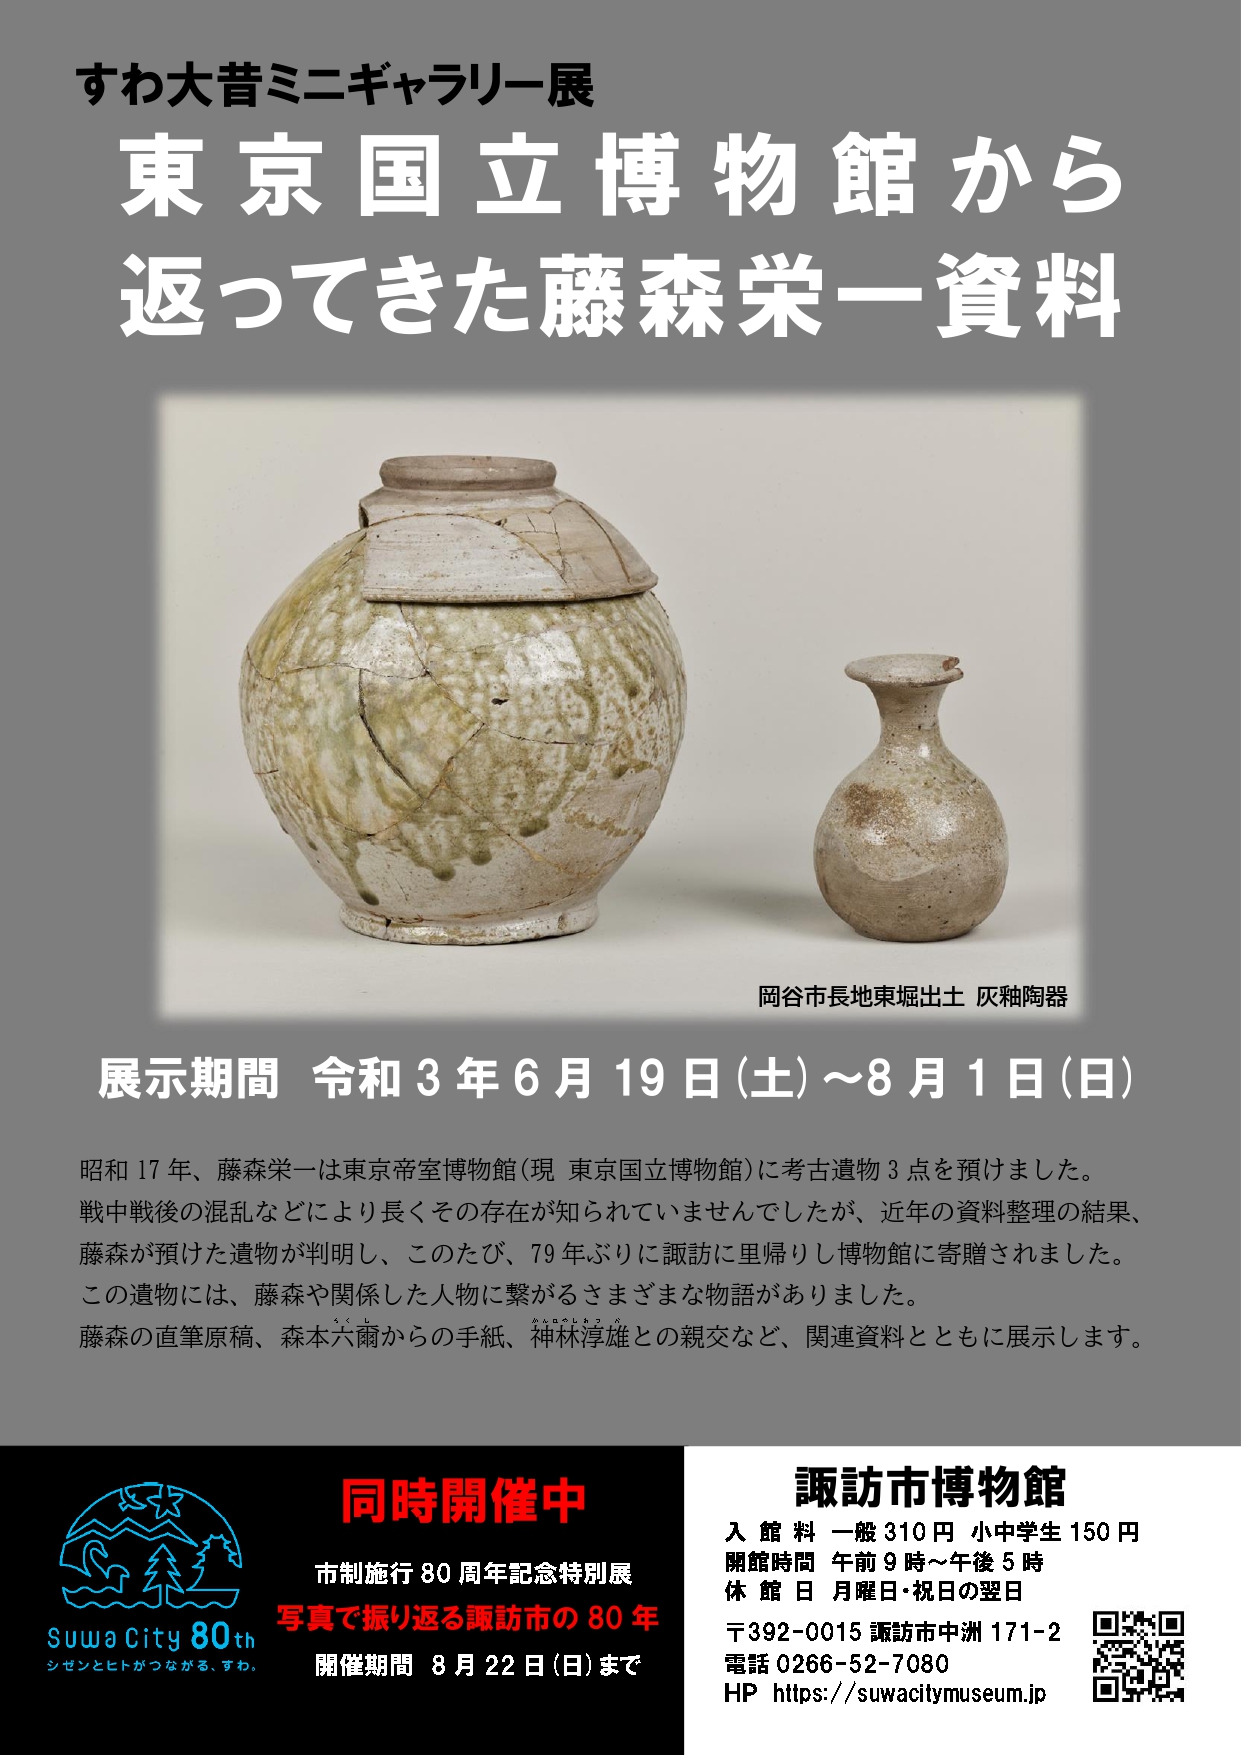 ミニギャラリー展「東京国立博物館から返ってきた藤森栄一資料」を開催します